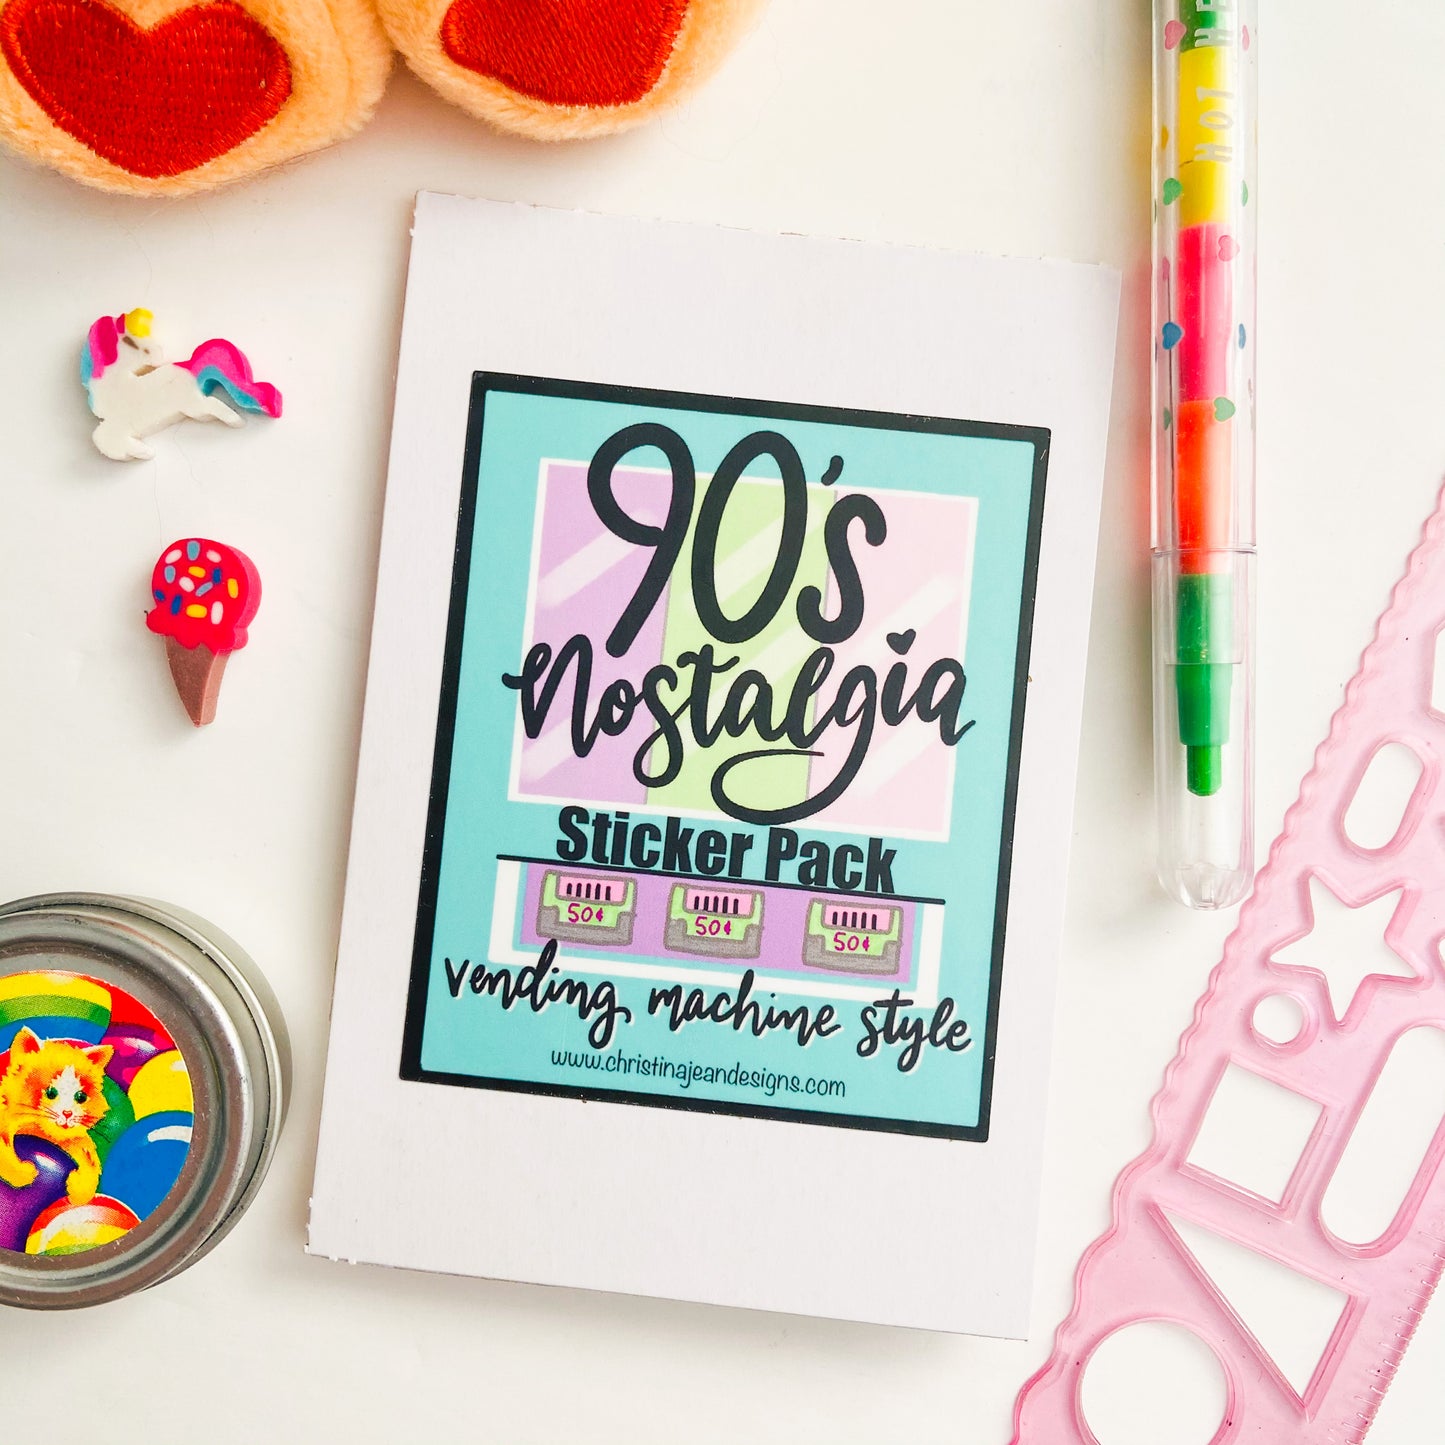 90's Nostalgia Sticker Pack Vol 1